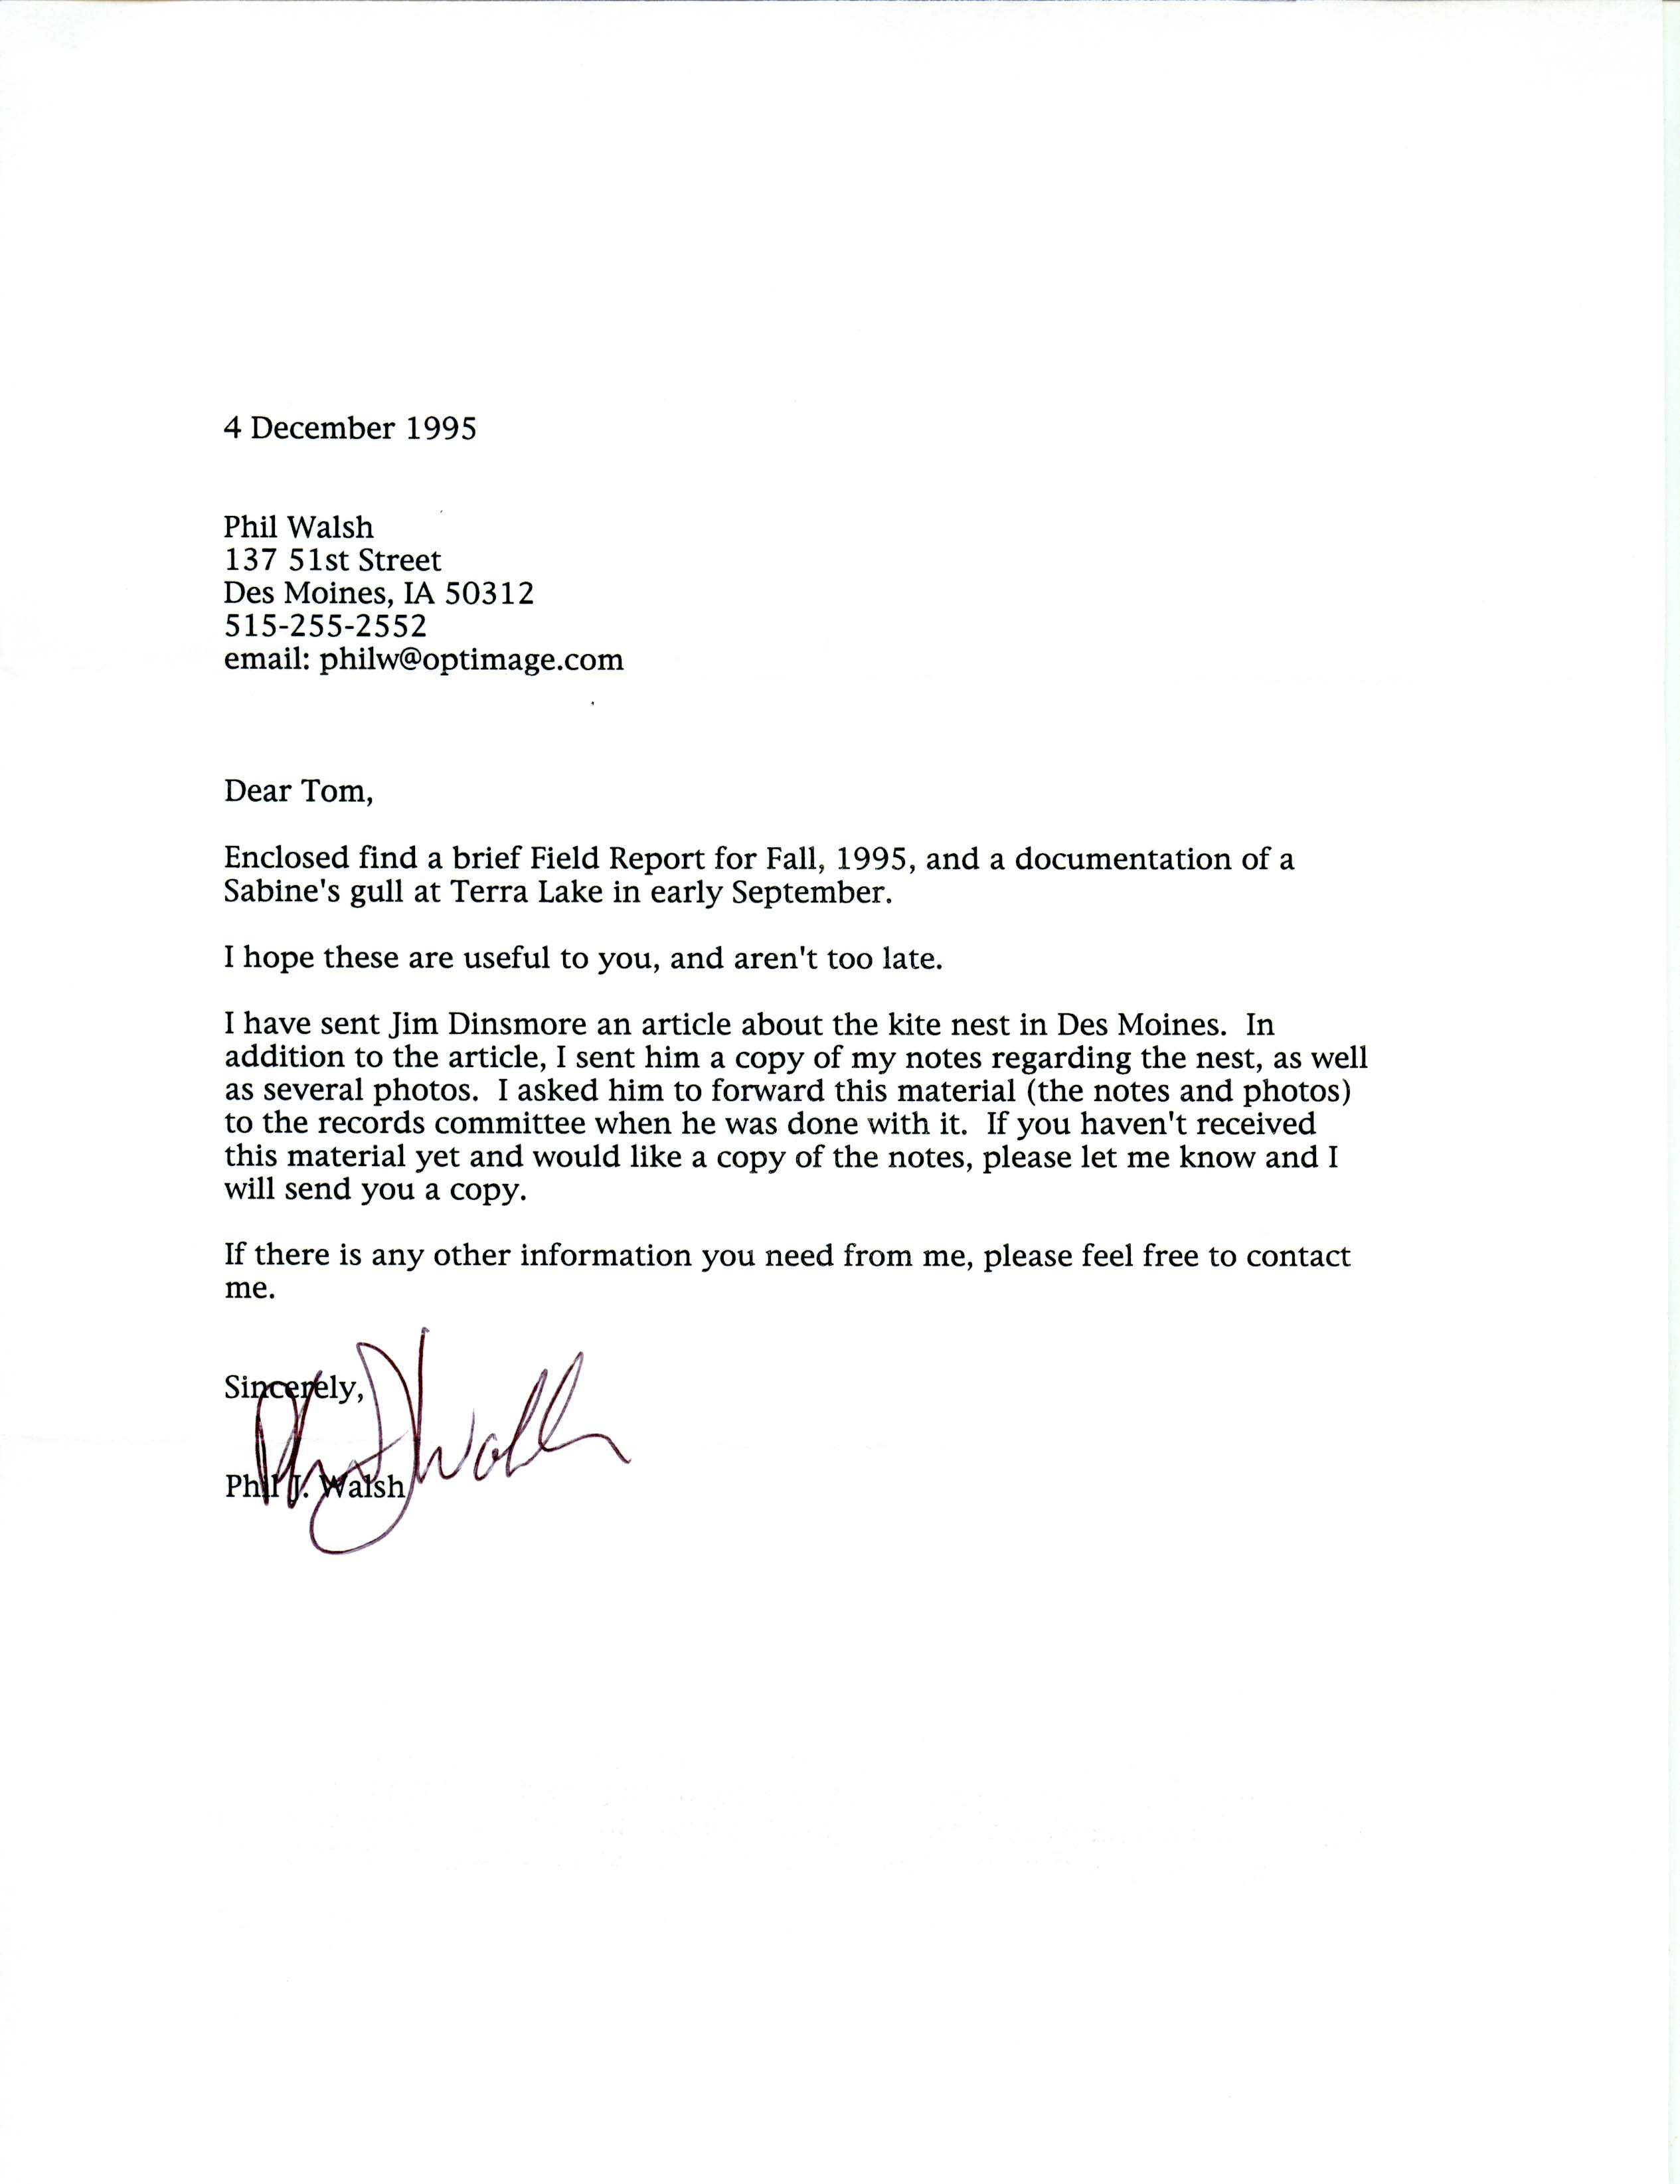 Philip J. Walsh letter to Thomas H. Kent regarding bird sightings, December 4, 1995